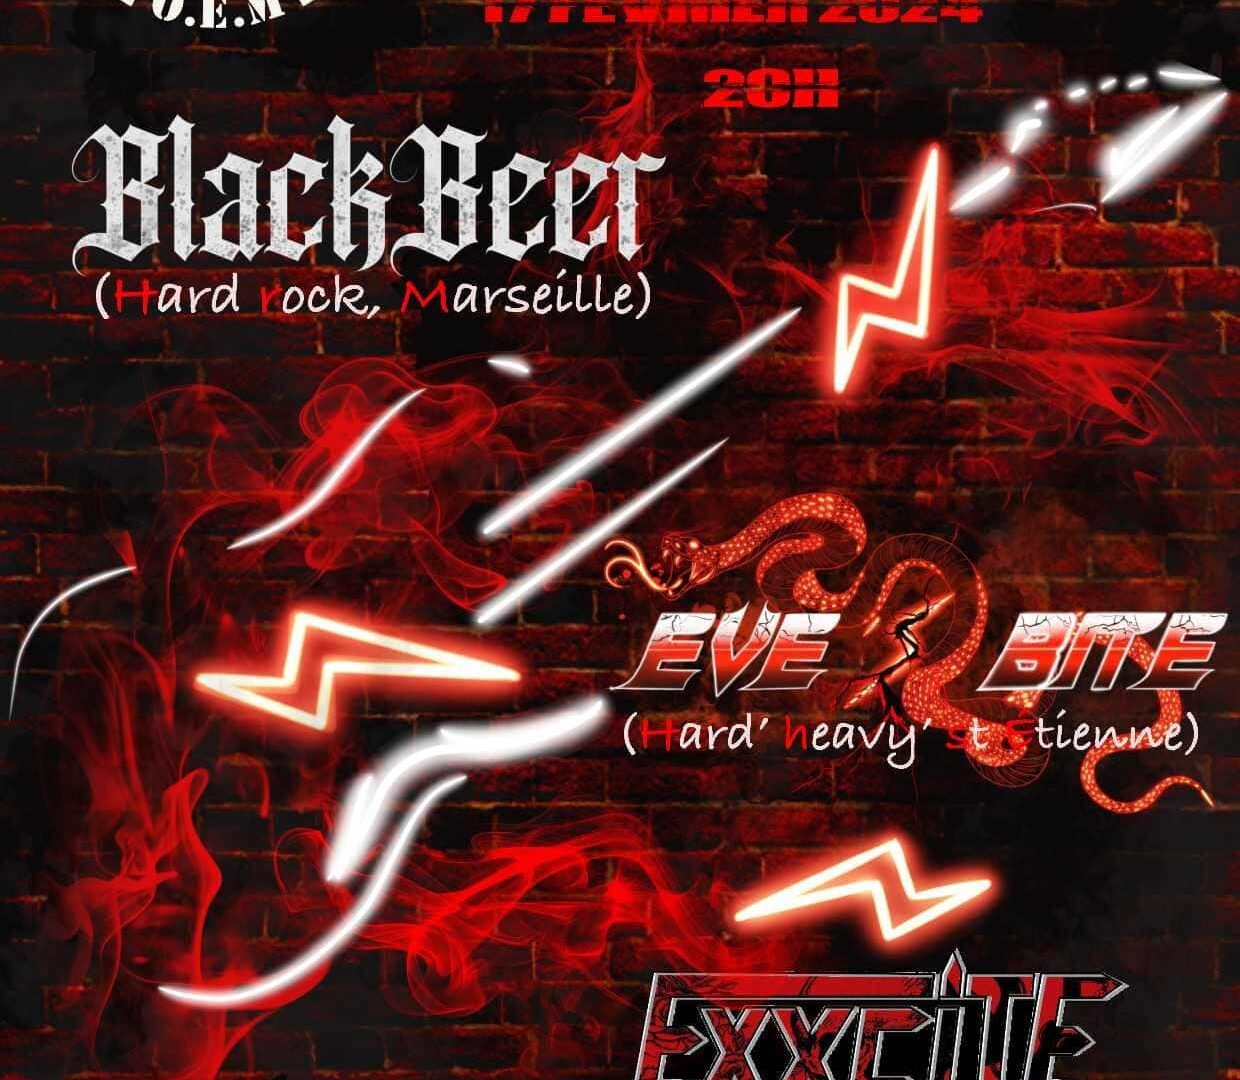 Concert Exxcite + Eve’s Bite + Blackbeer